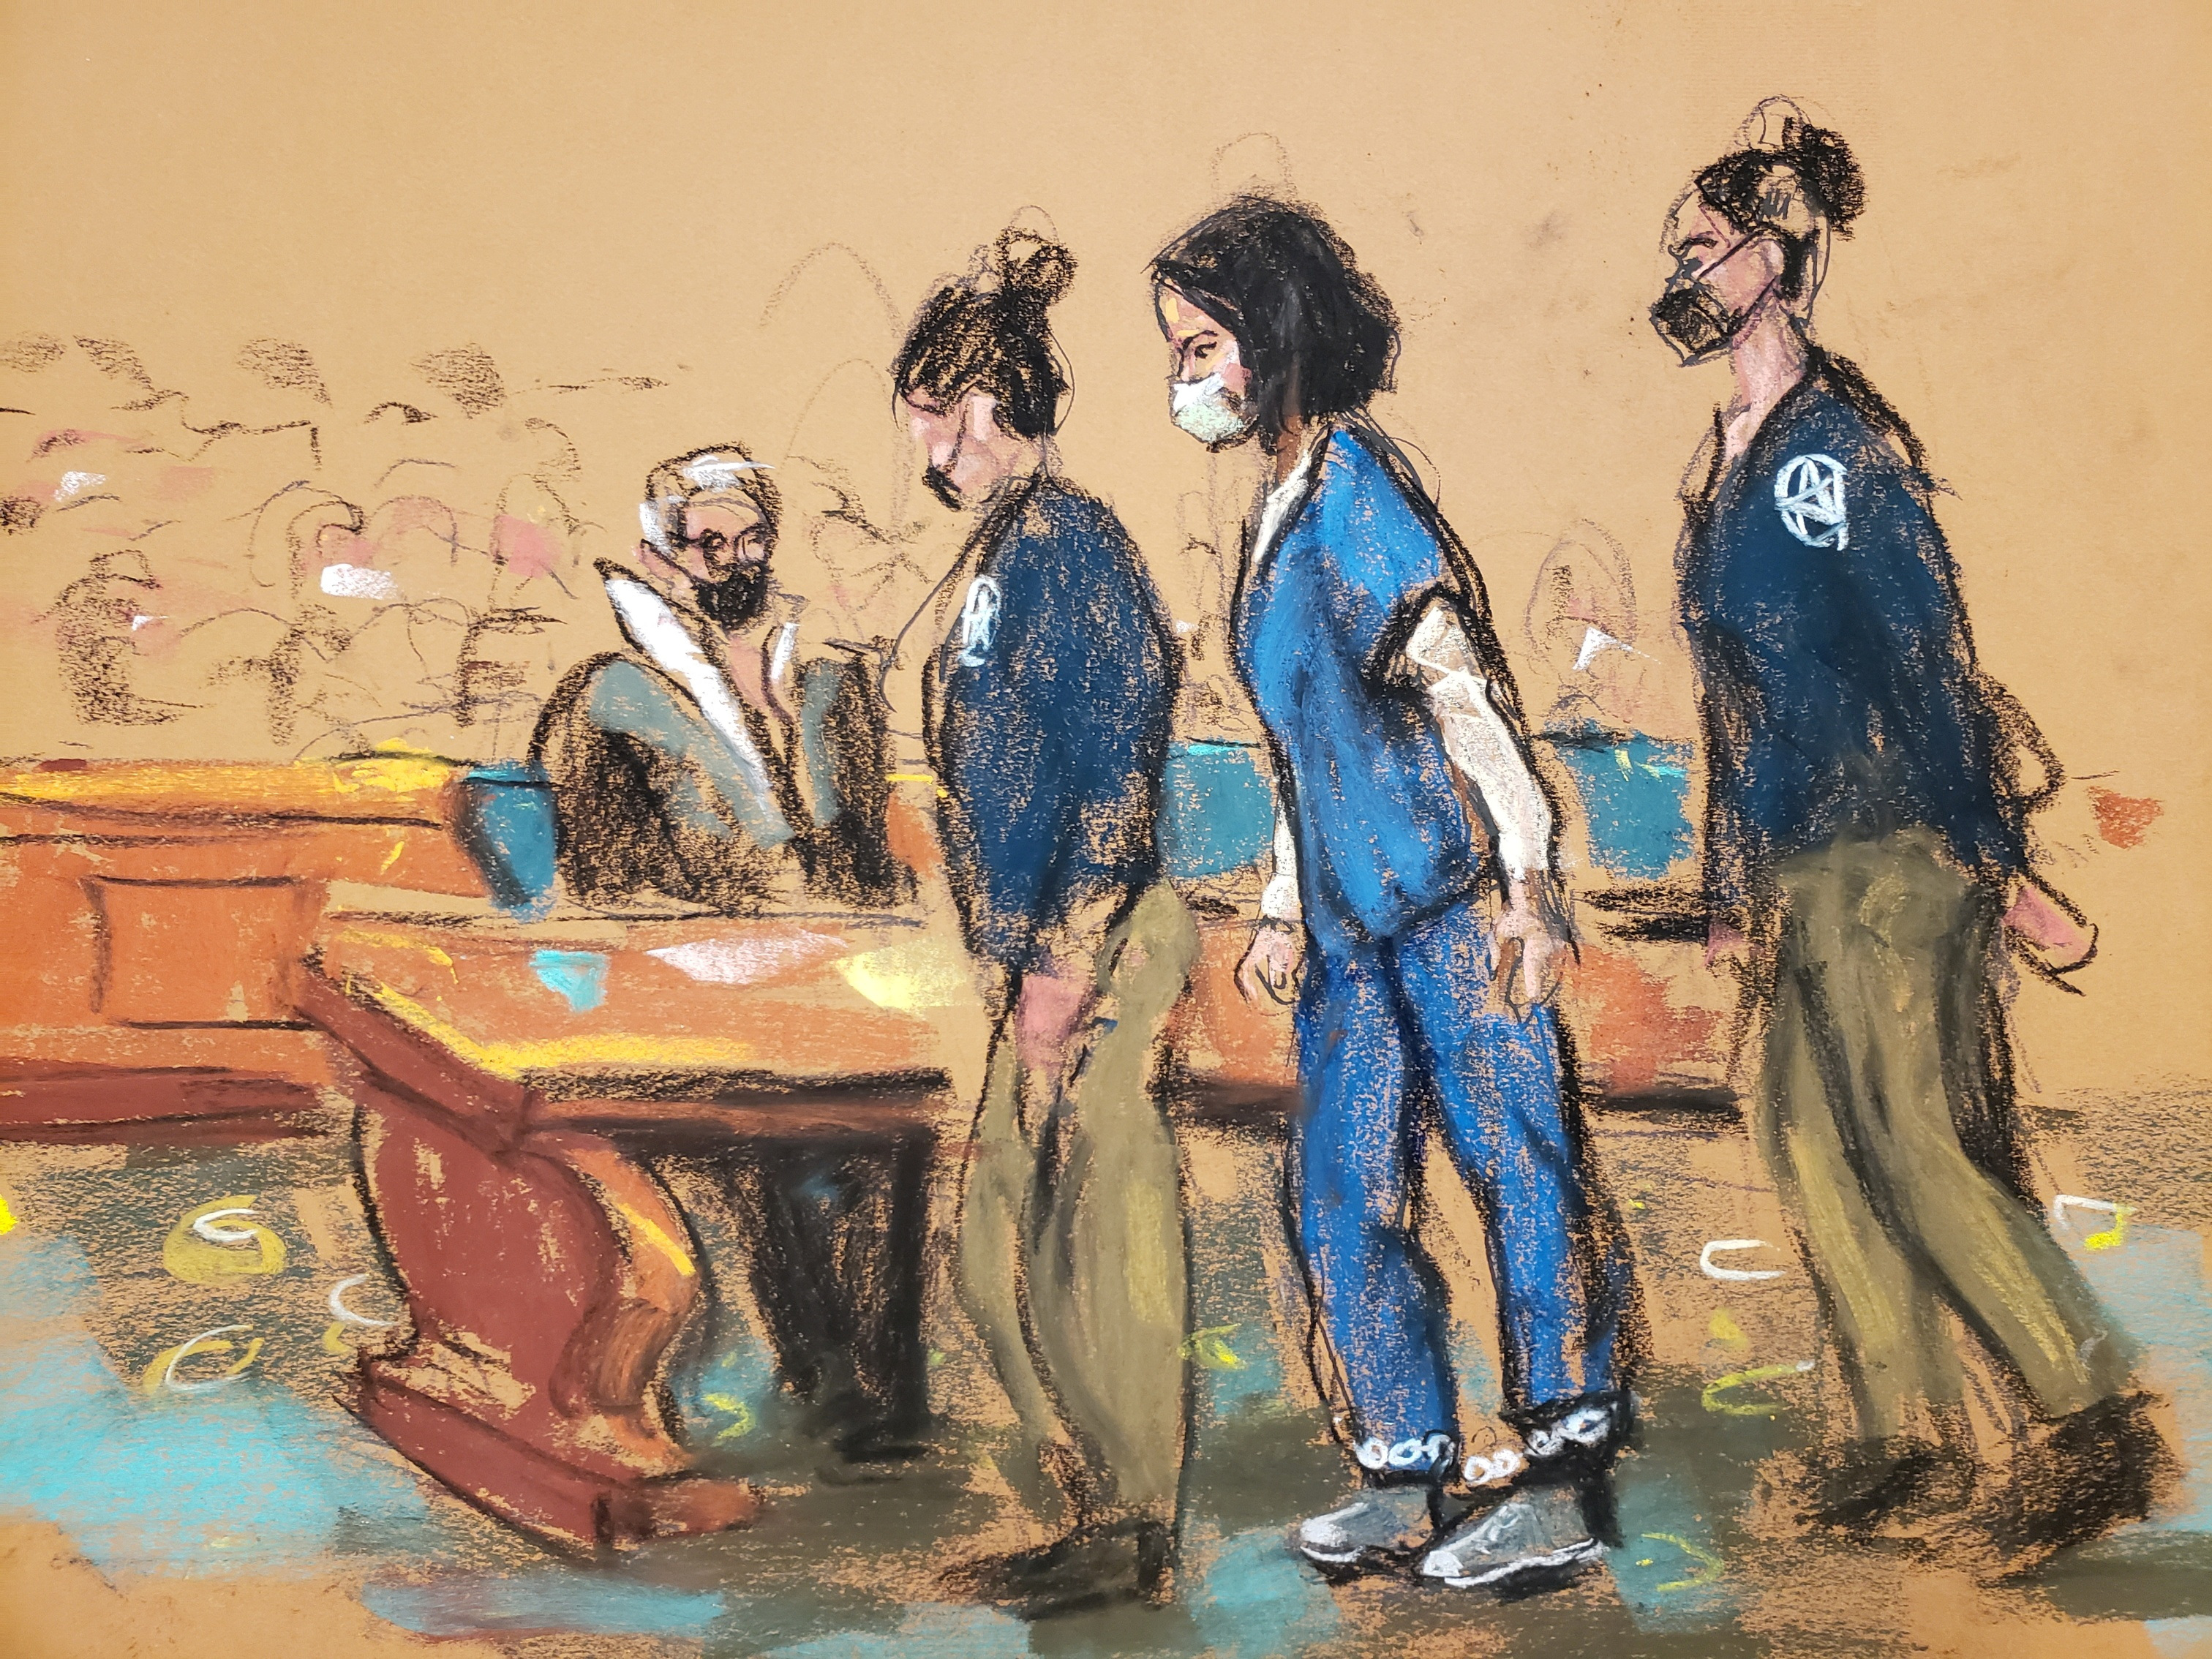 La asociada de Jeffrey Epstein, Ghislaine Maxwell, llega con grilletes a su audiencia de sentencia en un boceto de la sala del tribunal en la ciudad de Nueva York (REUTERS/Jane Rosenberg)